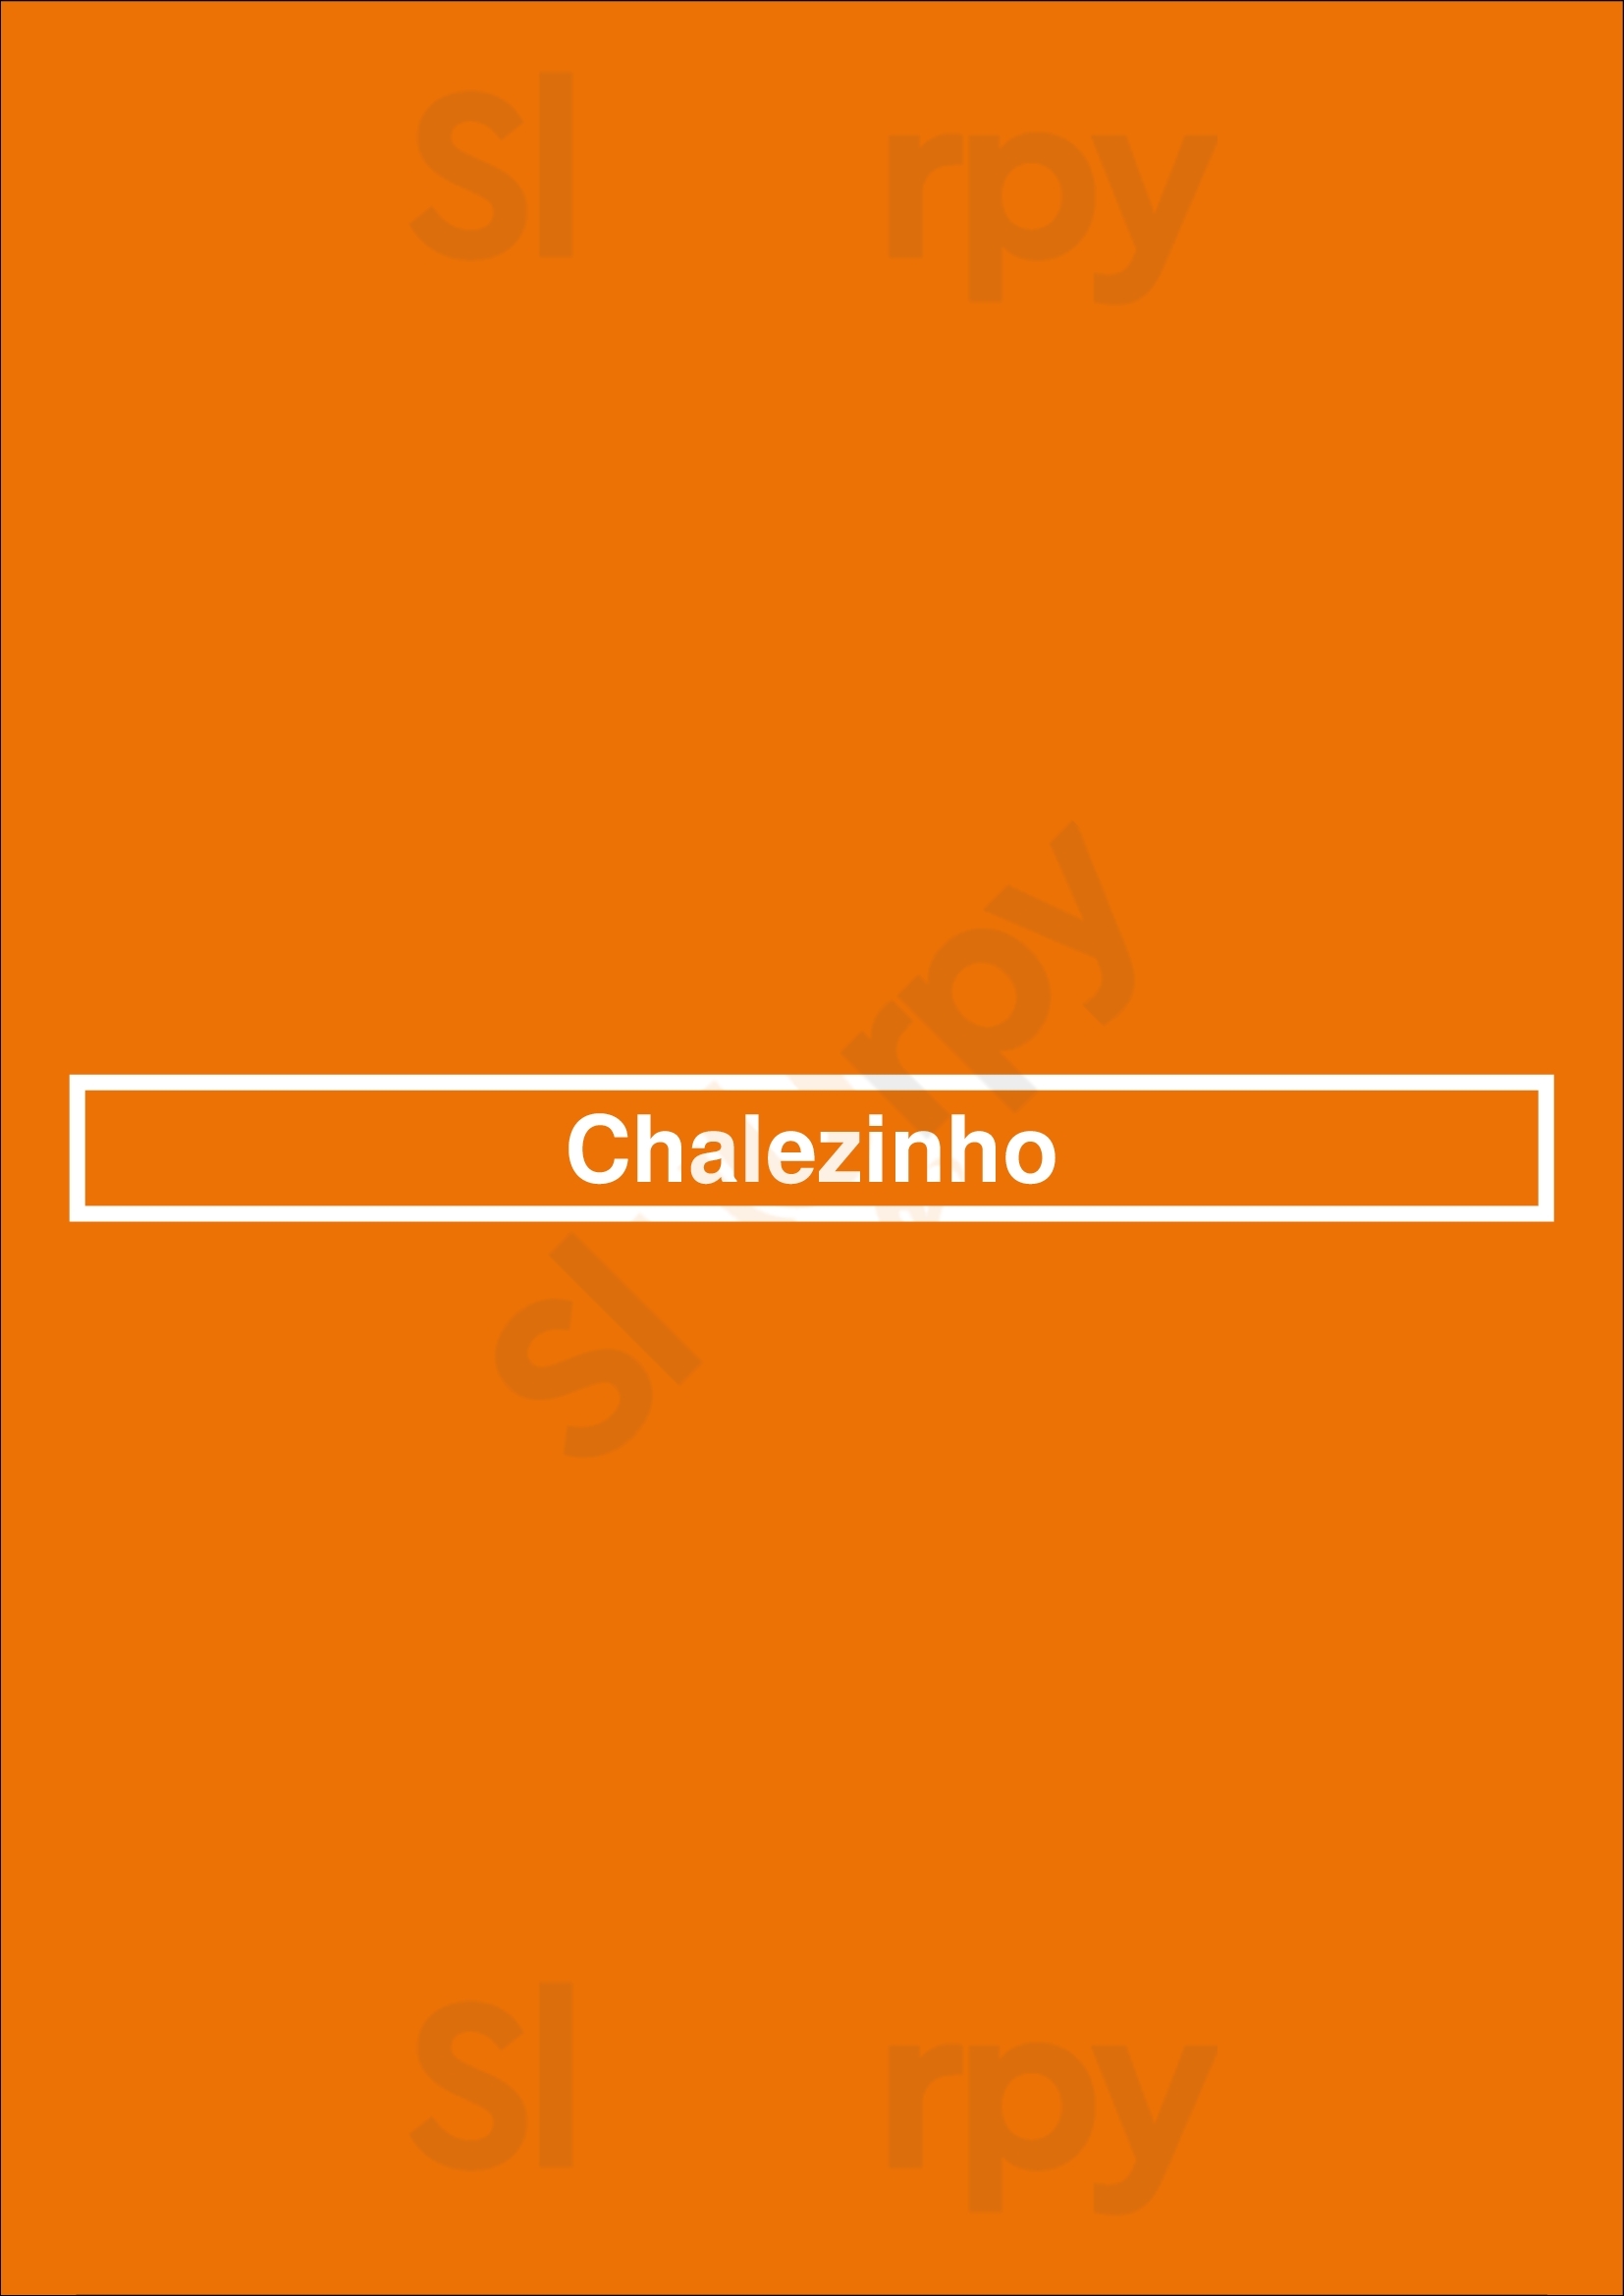 Chalezinho Nova Lima Menu - 1